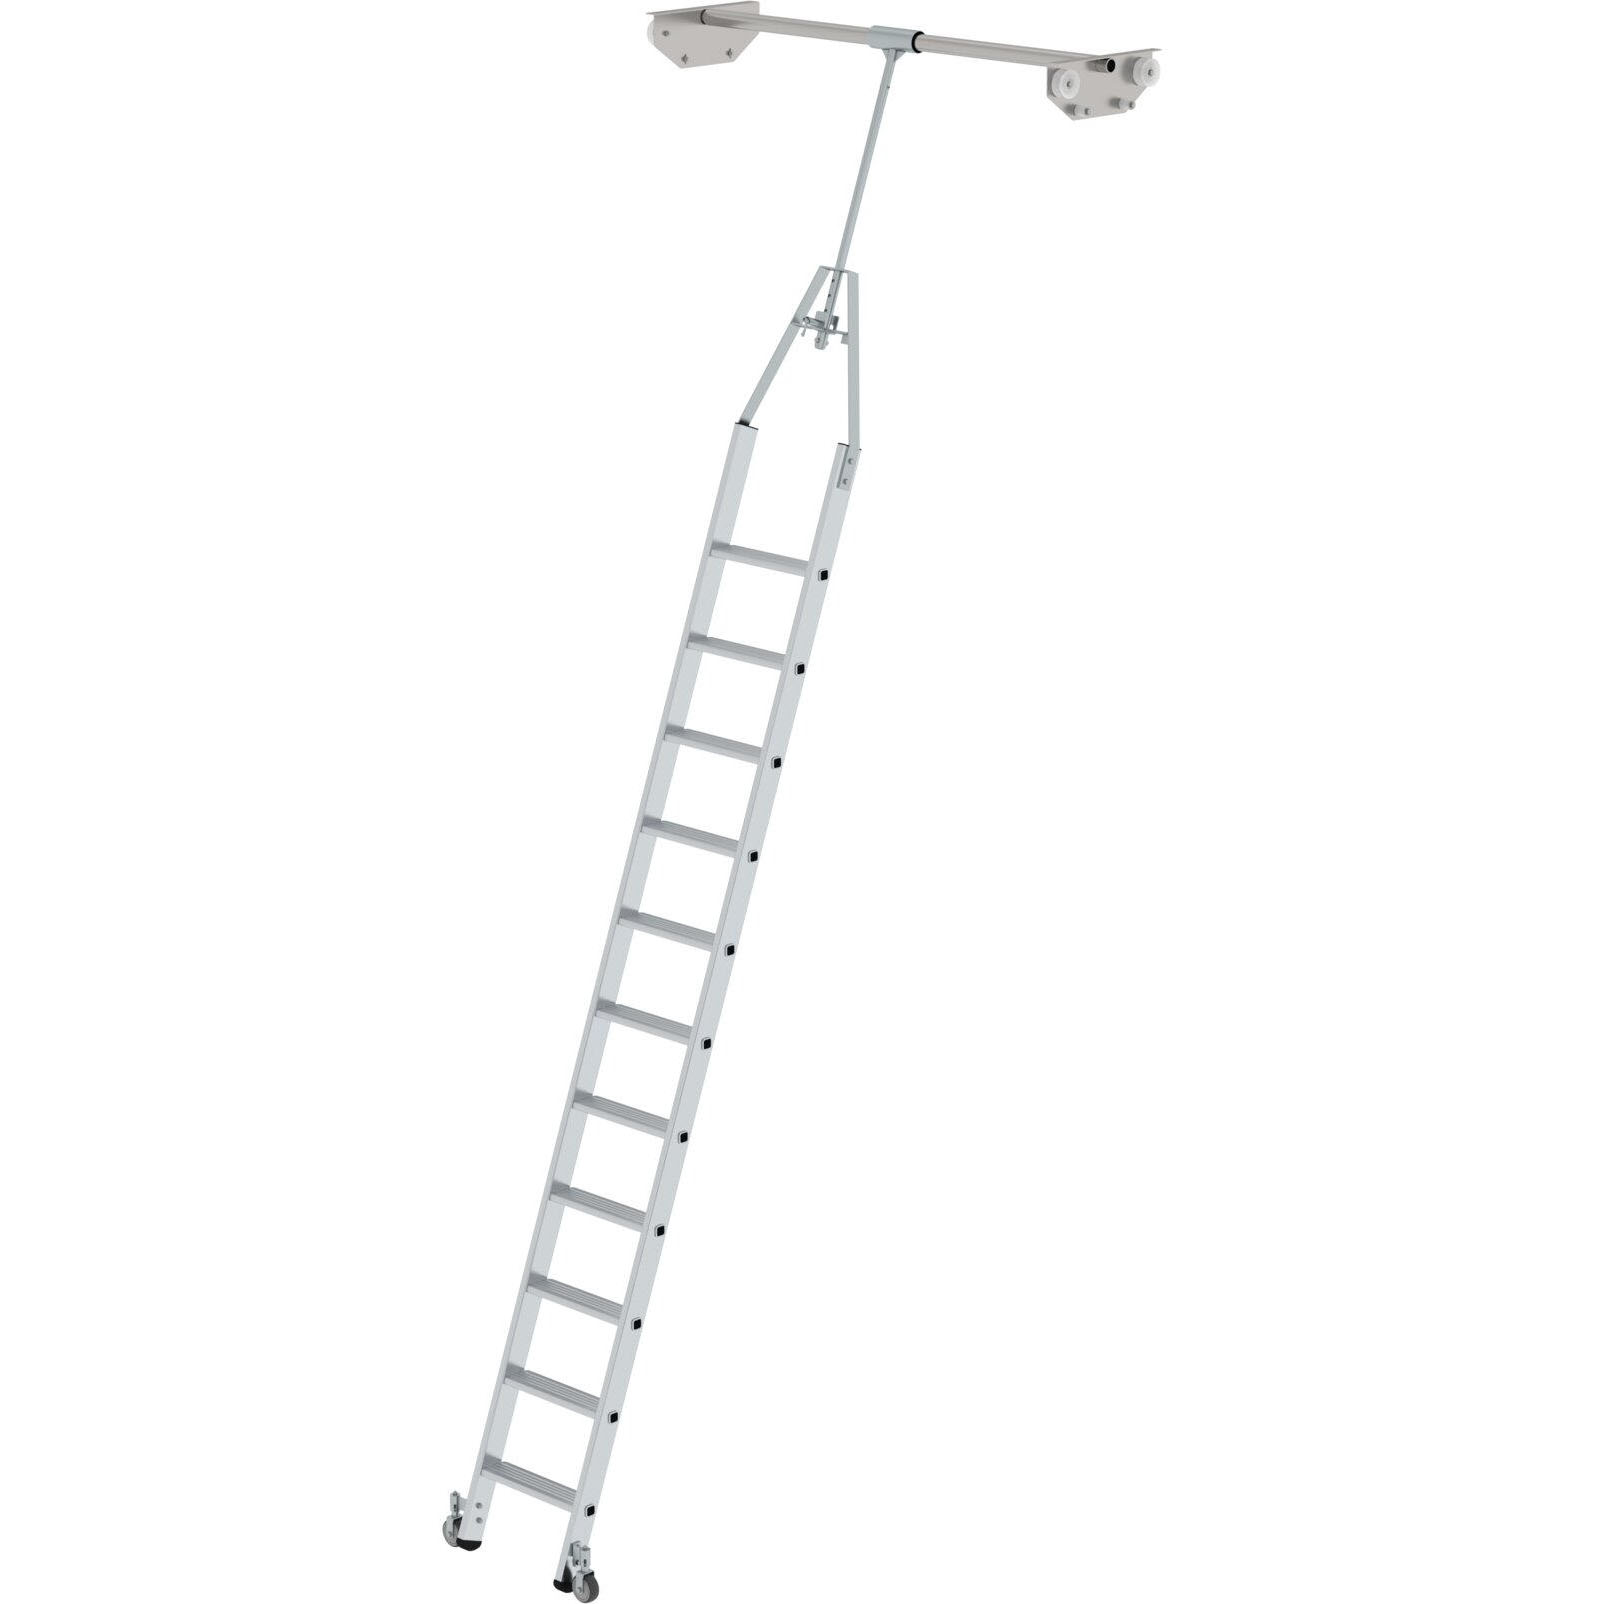 Стеллажная лестница из алюминия поворотная на траках 11 ступеней Munk 044511